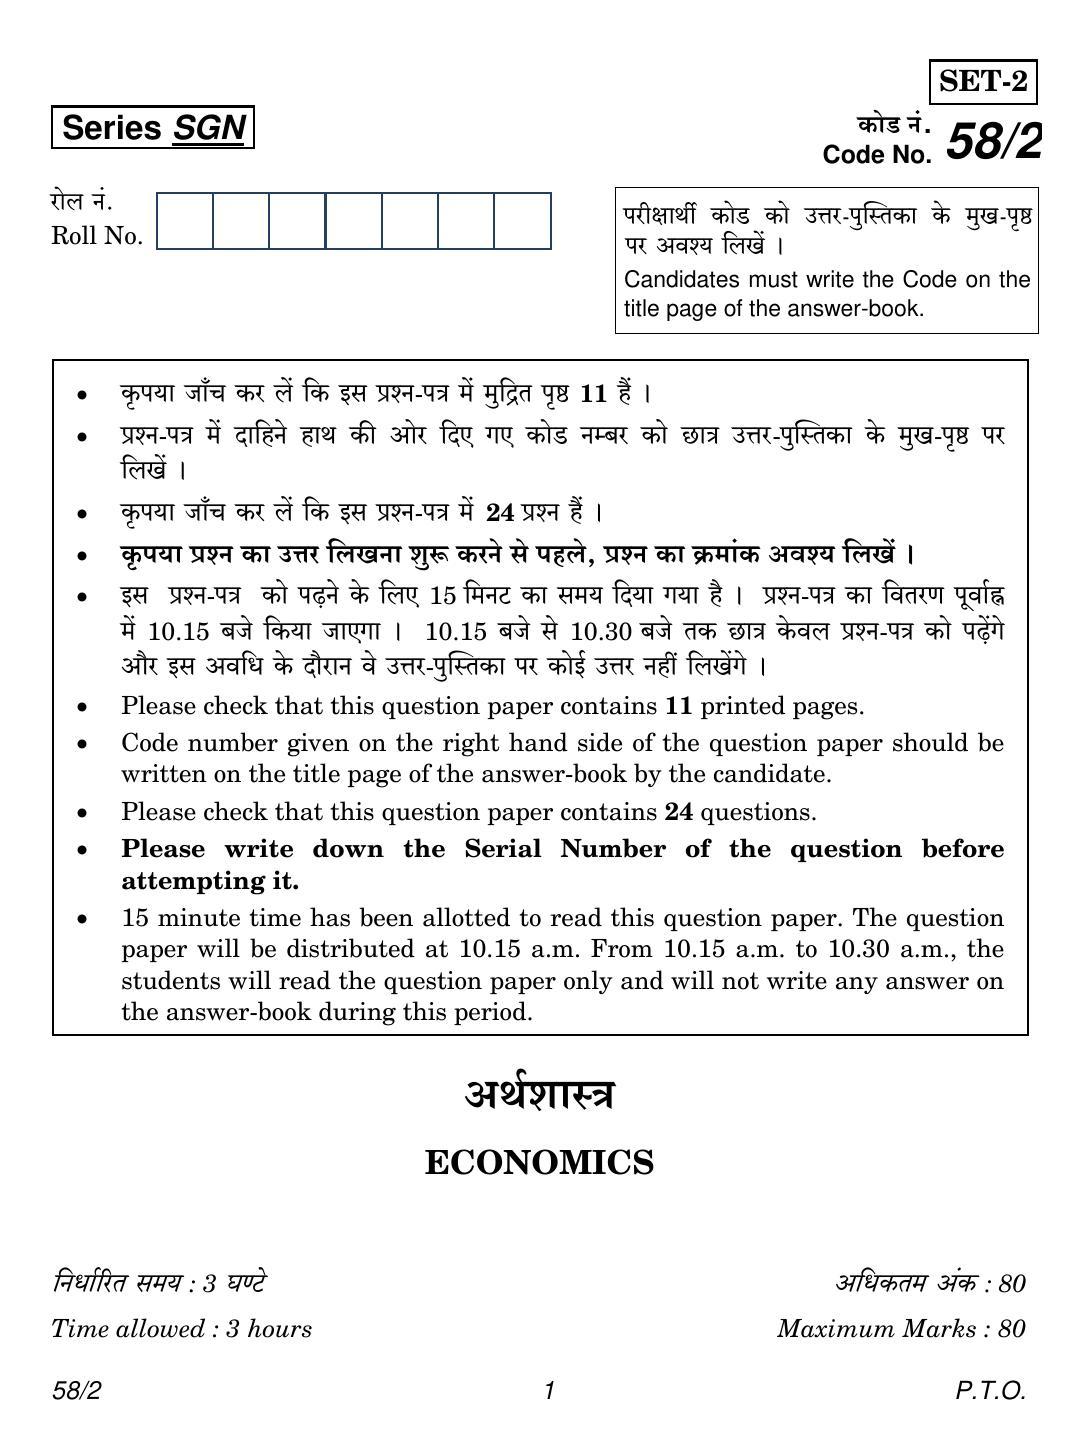 CBSE Class 12 58-2 Economics 2018 Question Paper - Page 1